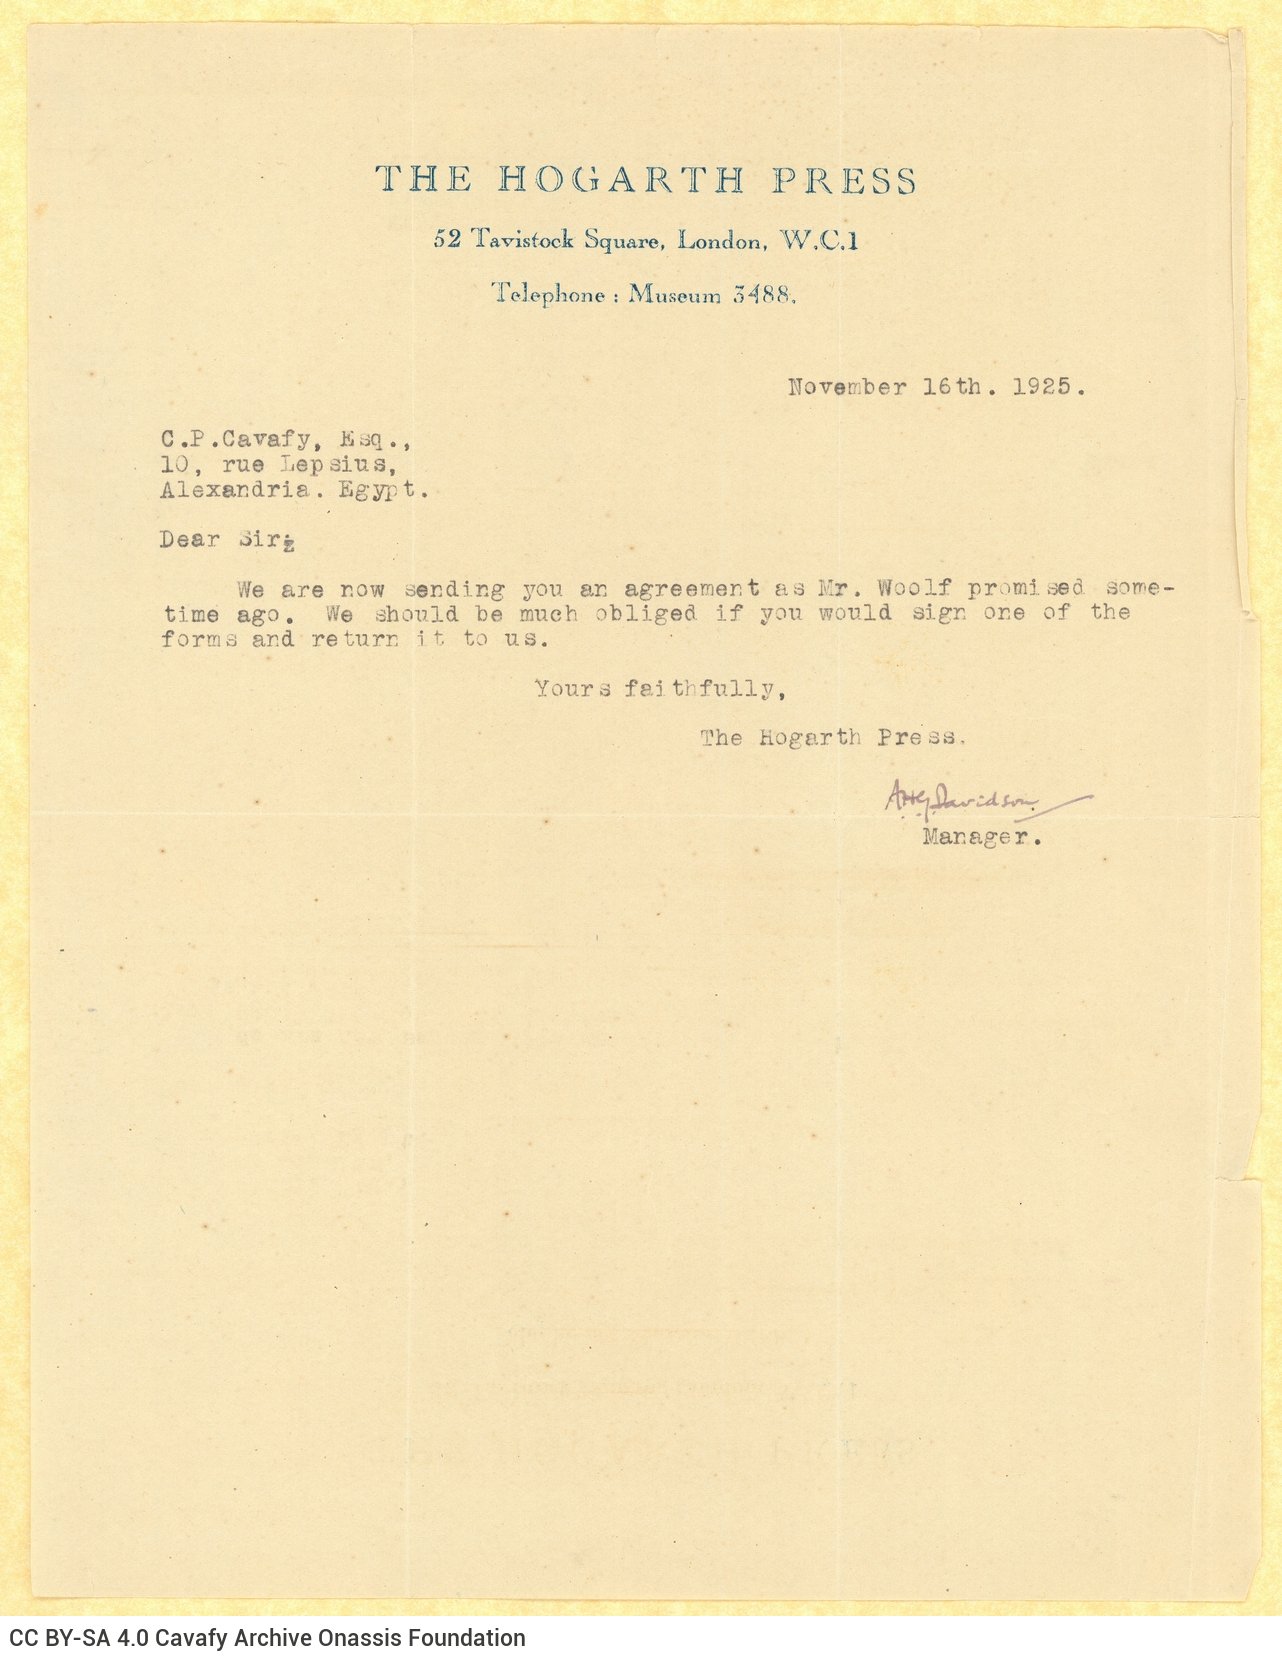 Δακτυλόγραφη επιστολή του Άνγκους Χ. Τζ. Ντέιβιντσον (Angus H. G. Davidson) εκ 